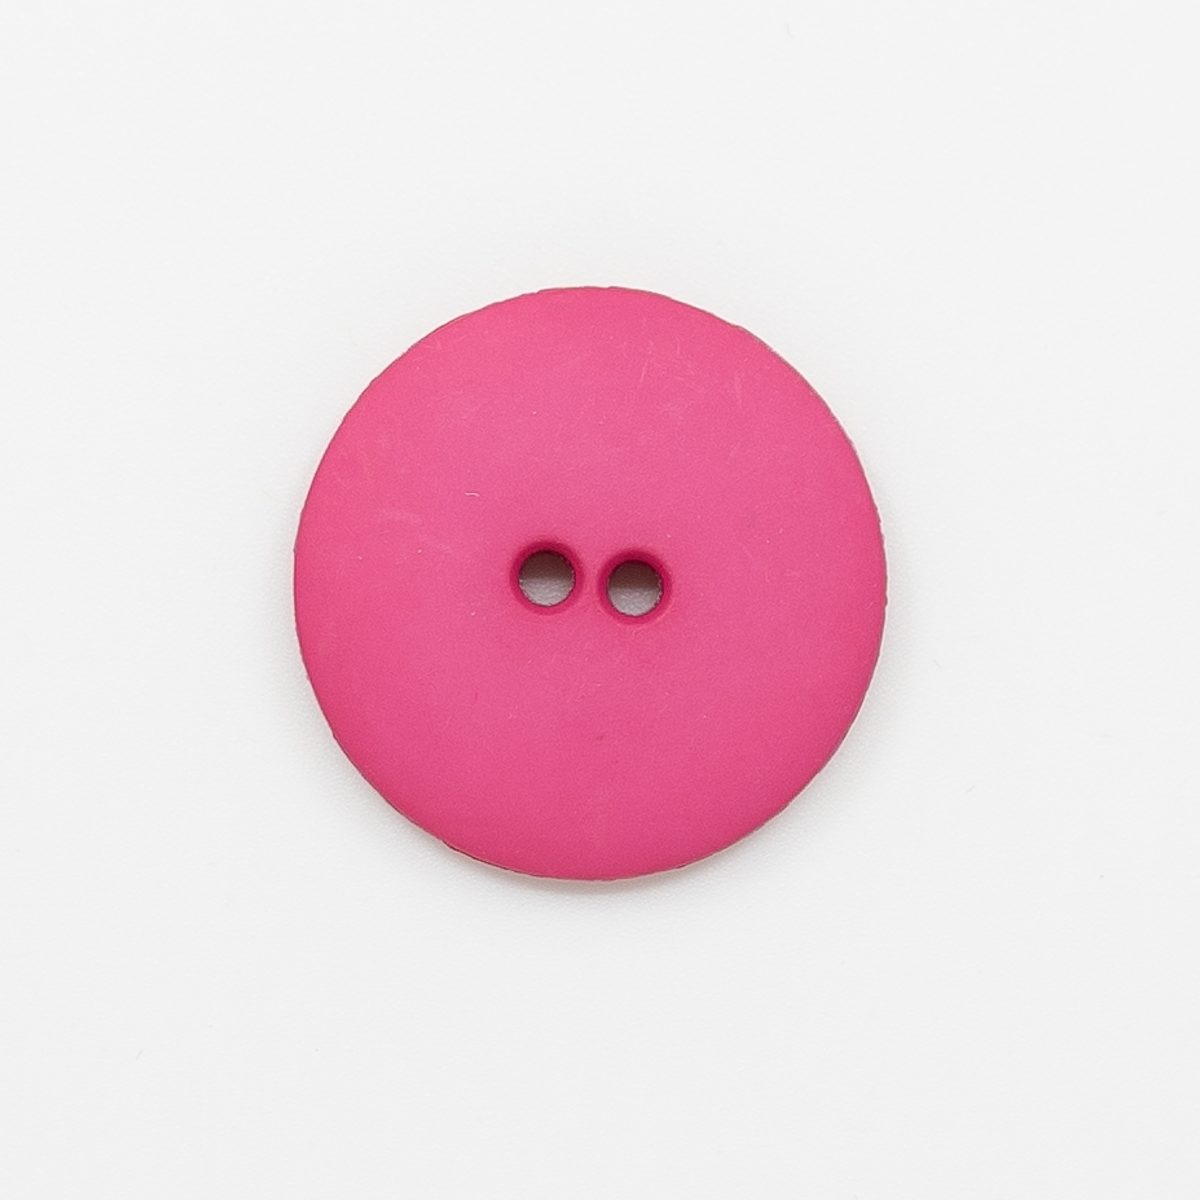  - Pink plastic button | Matt | Round plastic button - by HipKnitShop - 02/06/2022